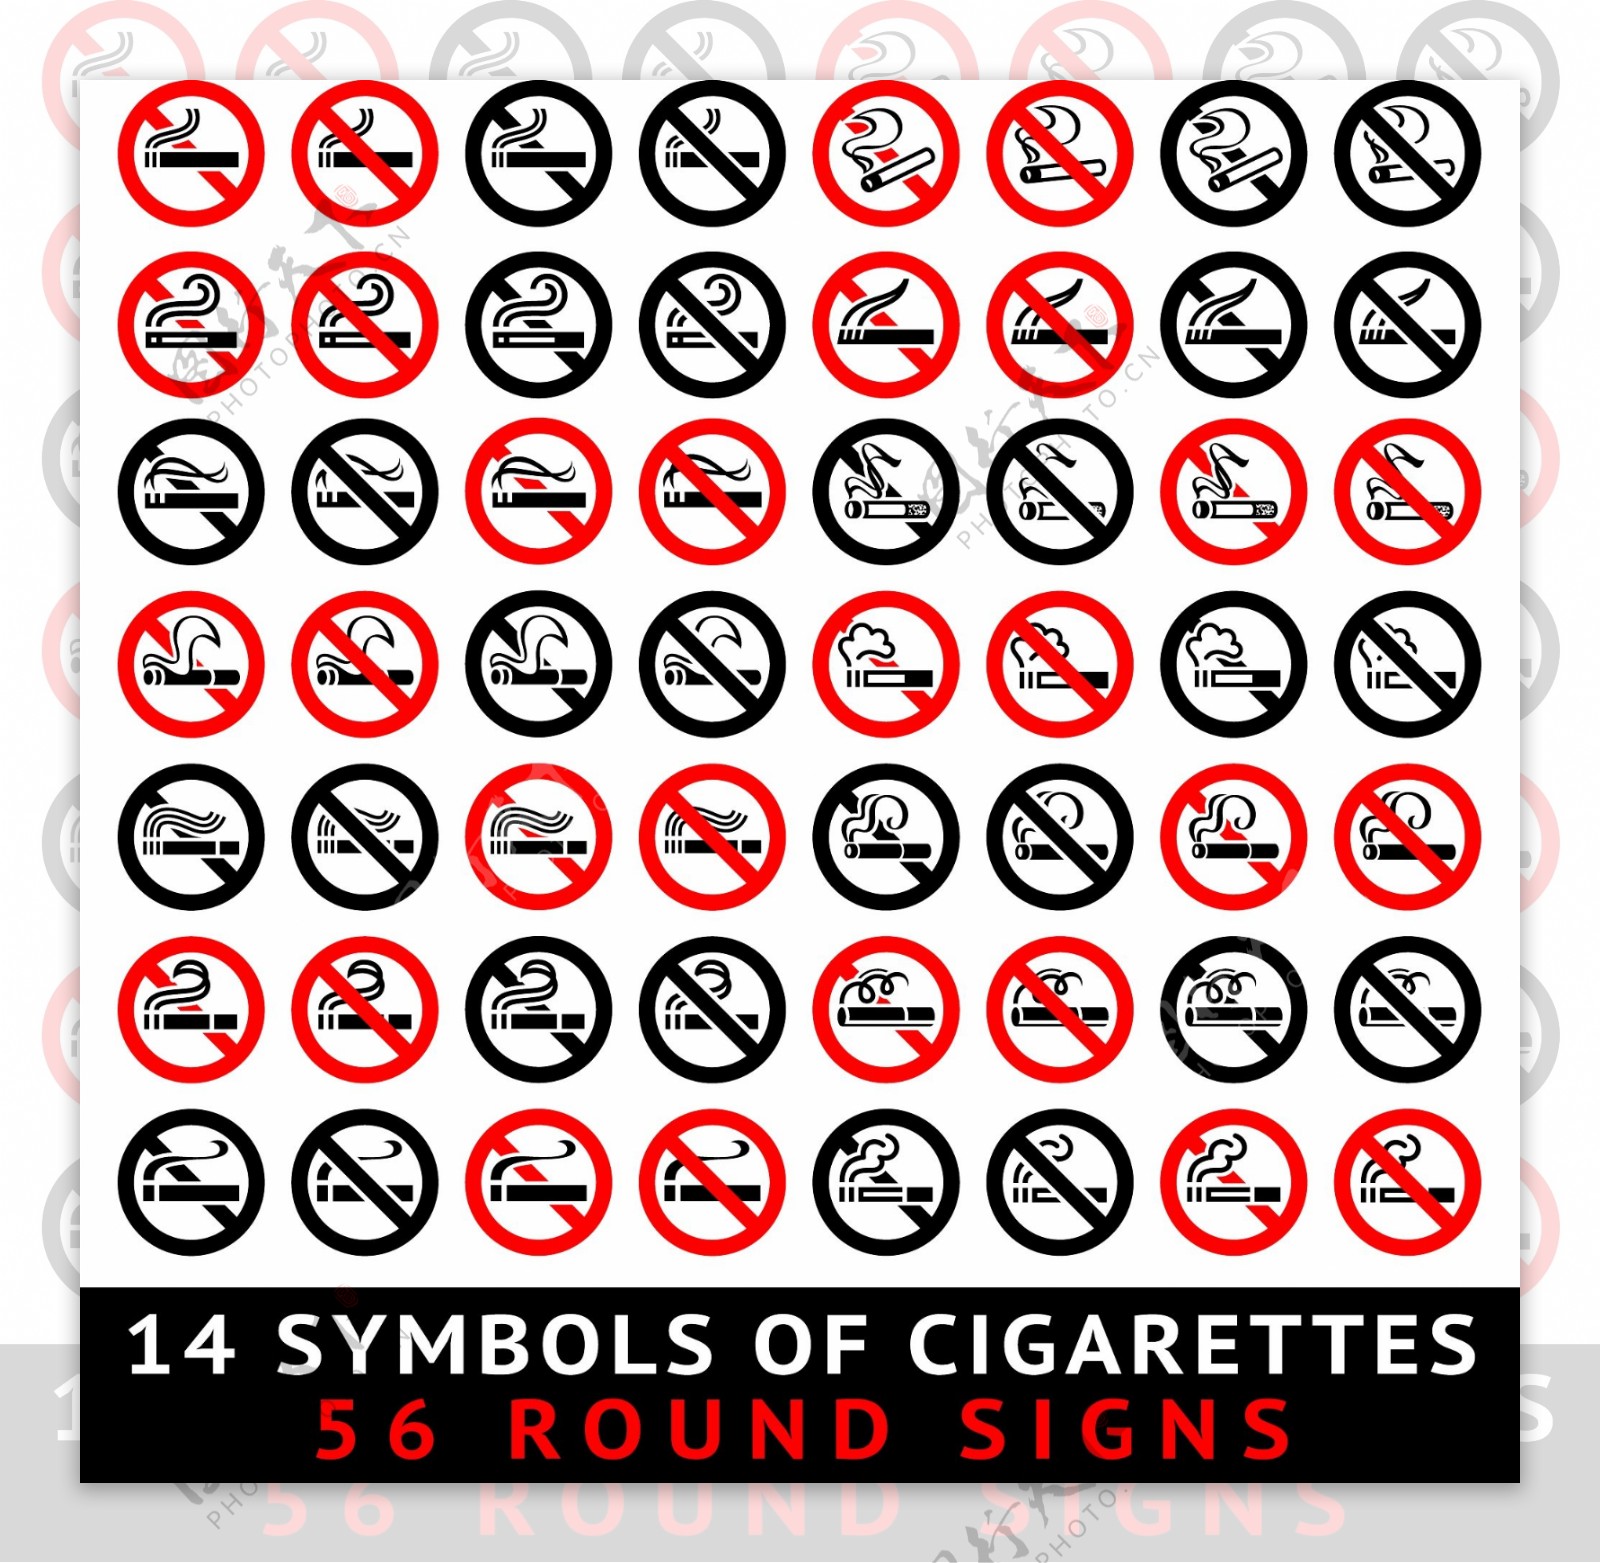 禁止吸烟红黑标志矢量图AI